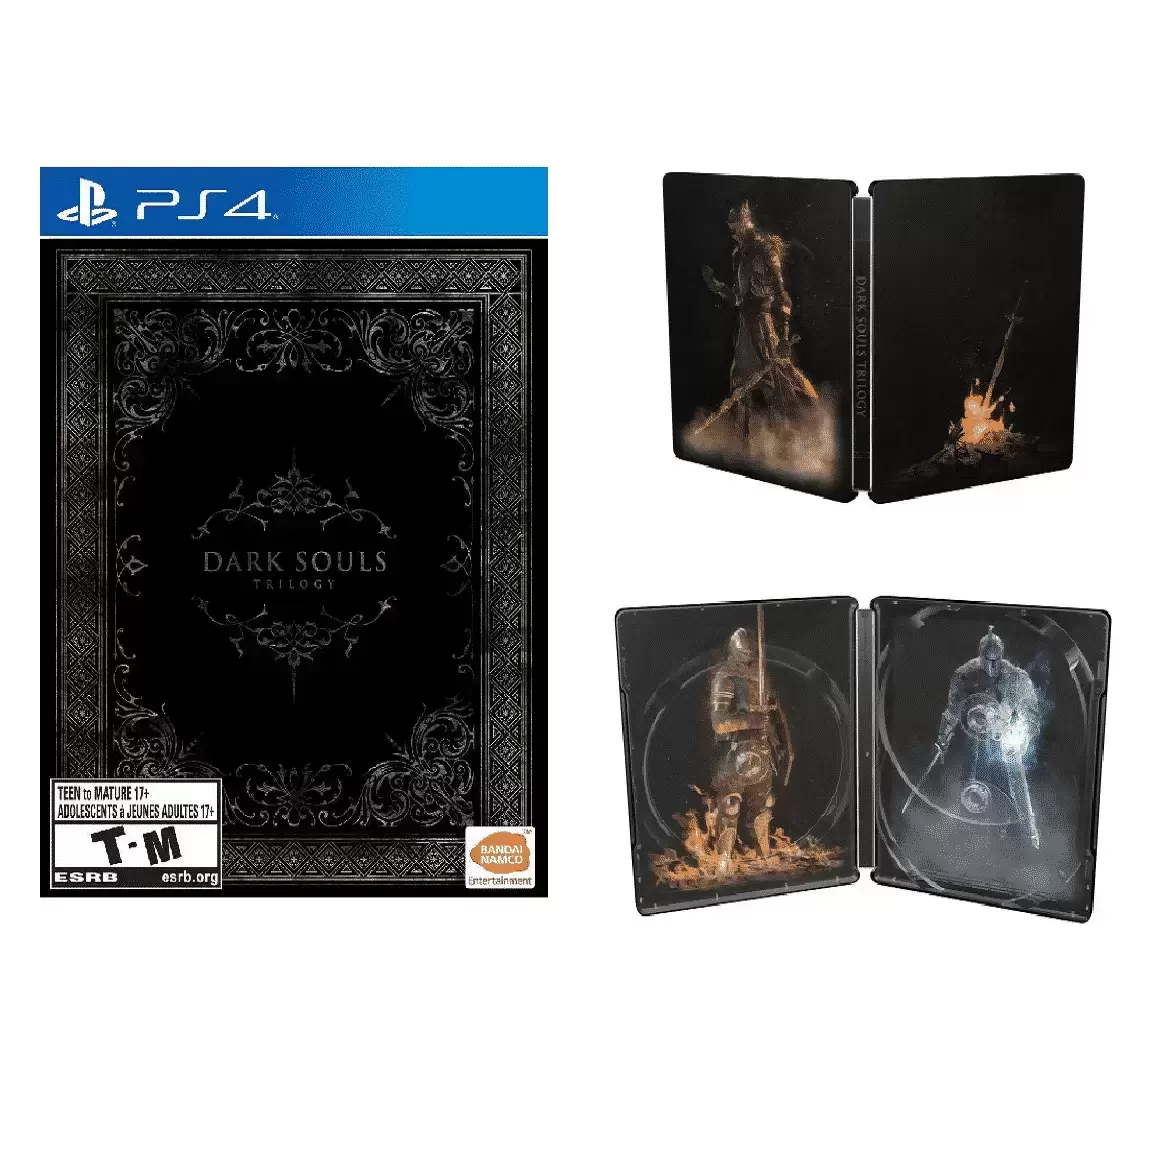 Dark Souls Trilogy, BANDAI NAMCO Entertainment, PlayStation 4 